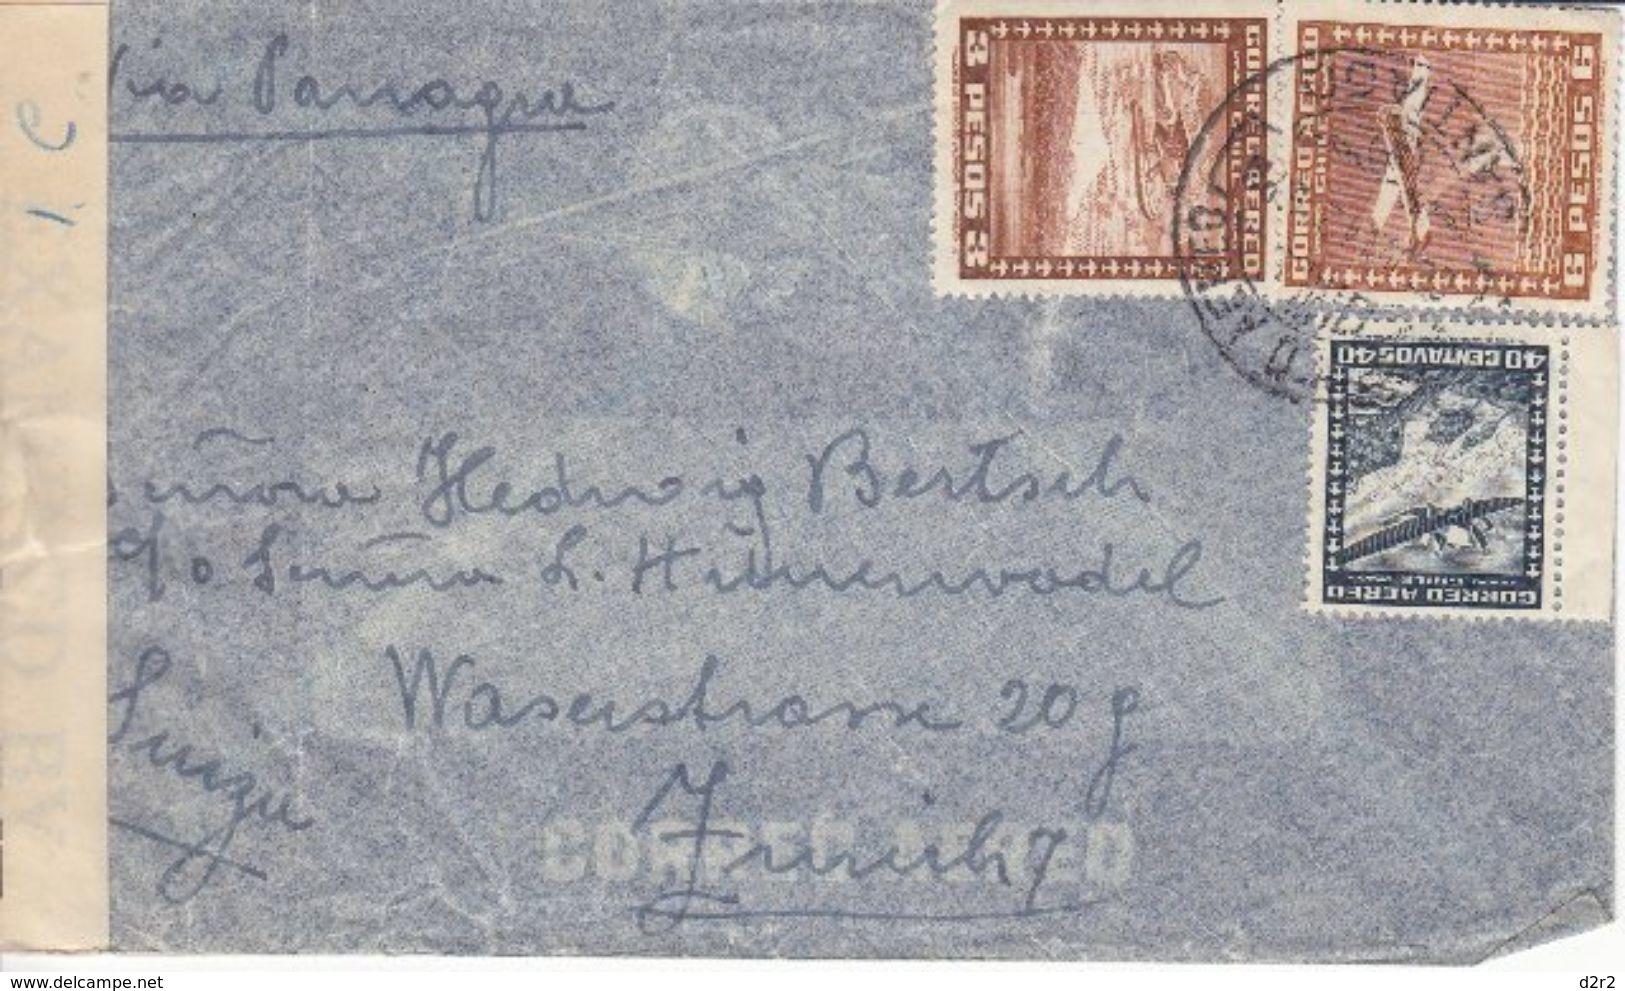 LETTRE CENSUREE POUR LA SUISSE - 1942 - VIA PARAGUAY - Chili